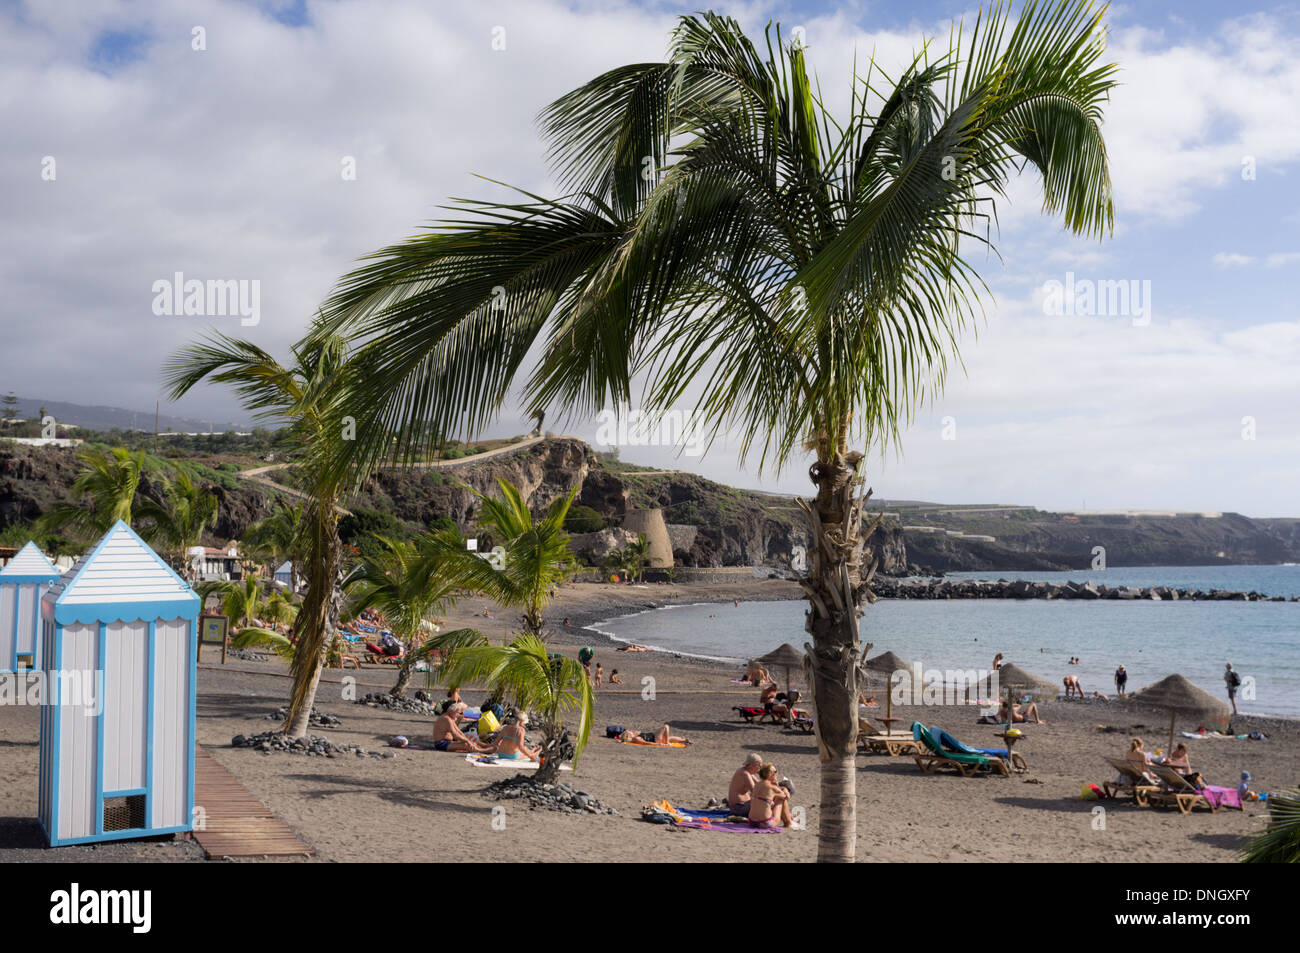 Palmiers et de l'évolution des cabanes de plage de San Juan, Tenerife, Canaries, Espagne Banque D'Images